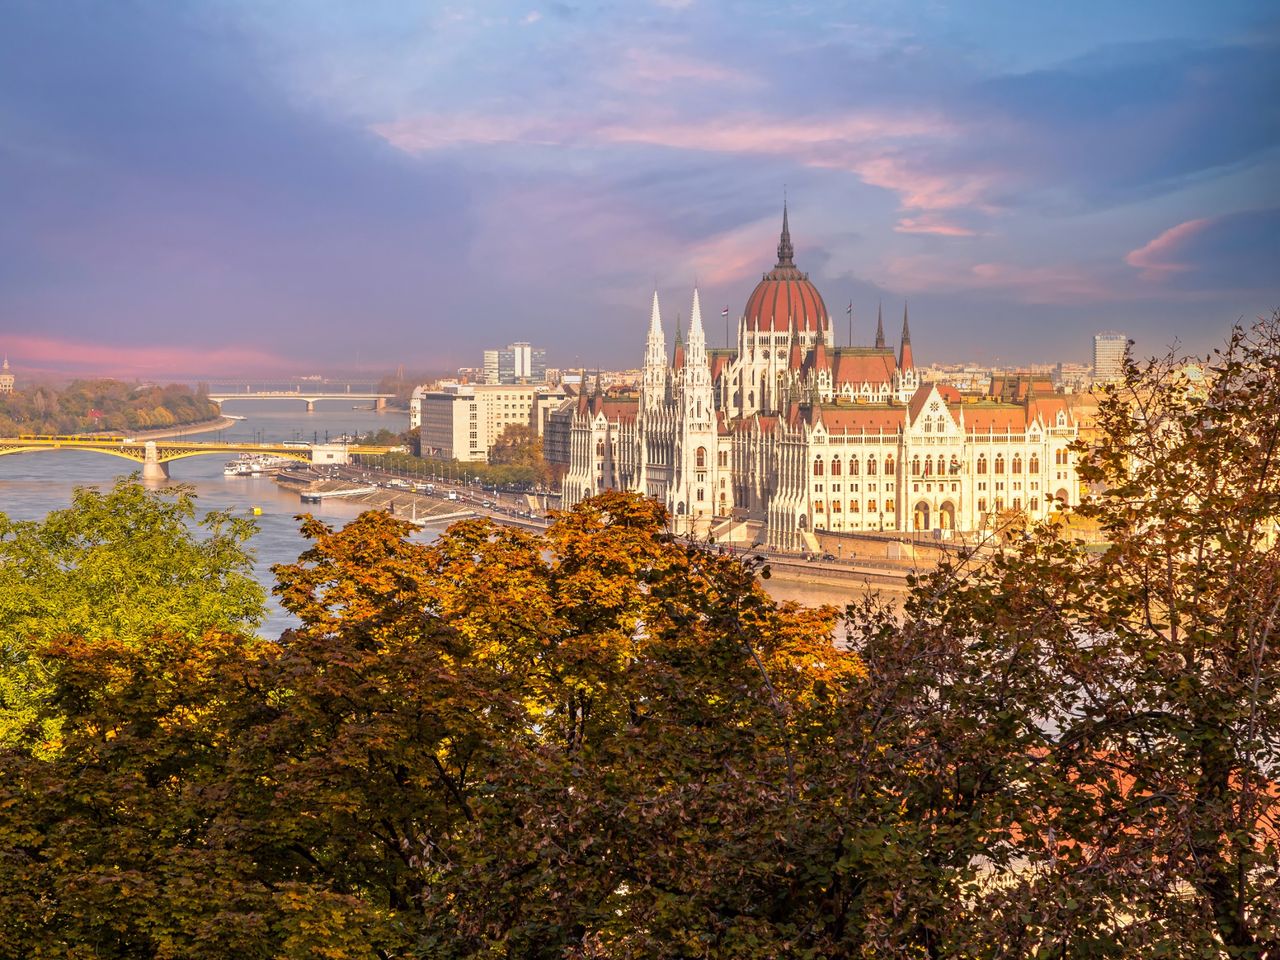 Виват, прекрасный Будапешт! | Цена 125€, отзывы, описание экскурсии